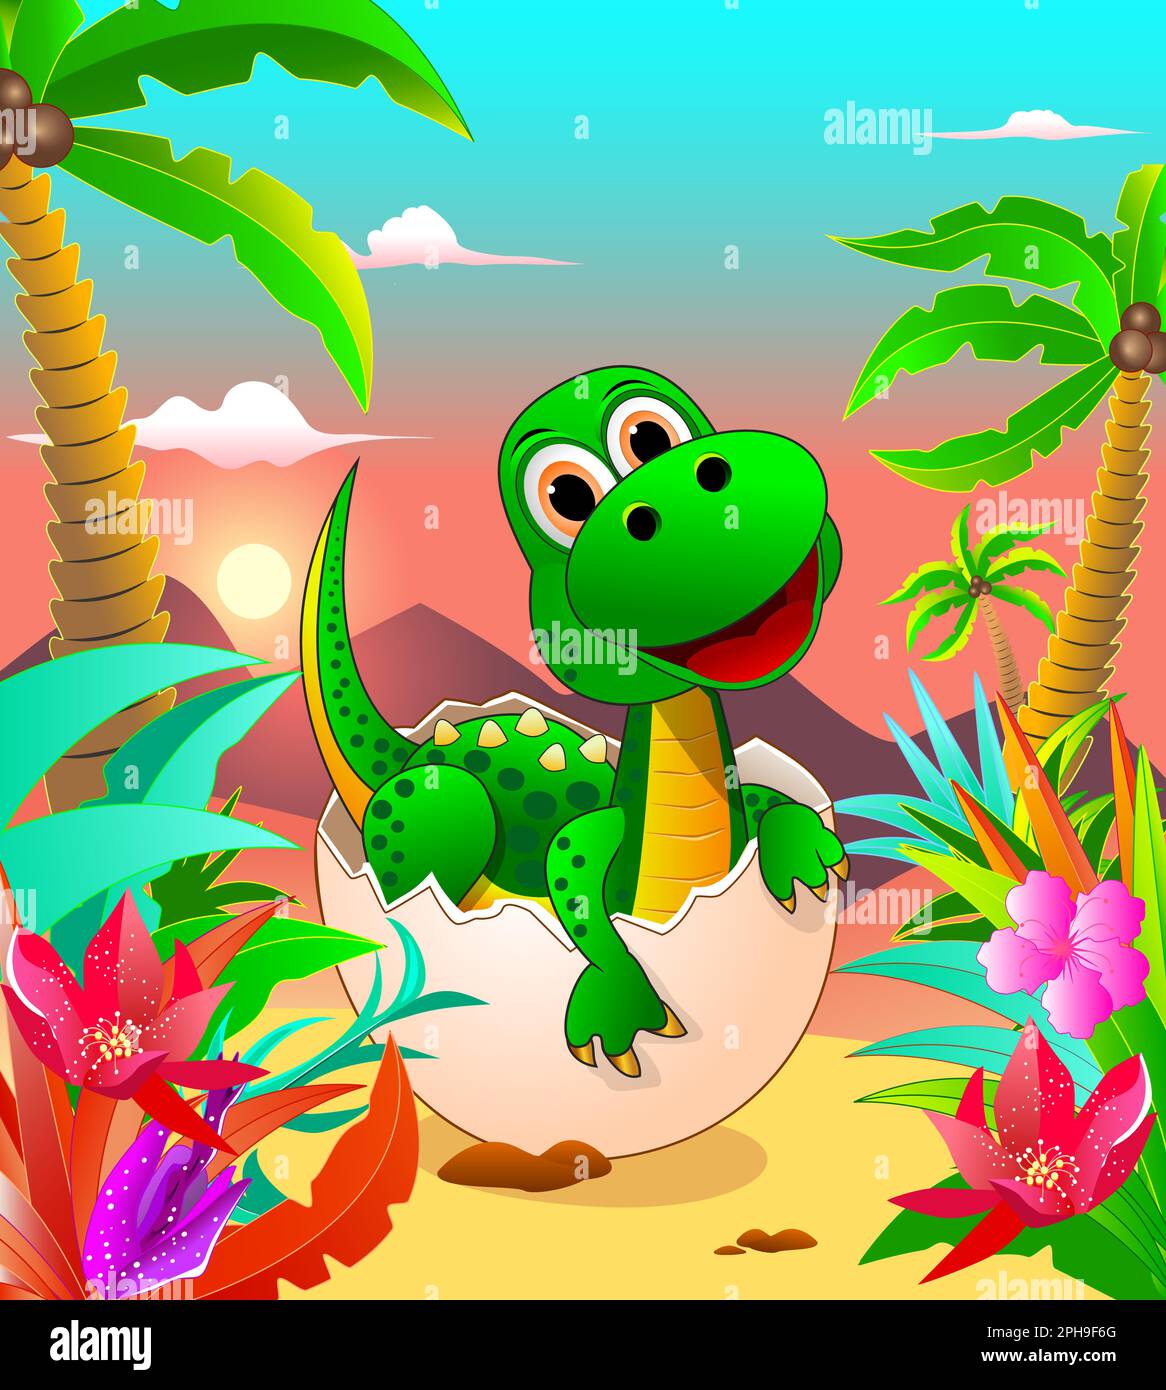 .Un petit dinosaure de dessin animé de couleur verte se trouve dans un oeuf dans le fond de la jungle. La naissance d'un dinosaure, de diverses plantes, et le soleil qui brille Illustration de Vecteur